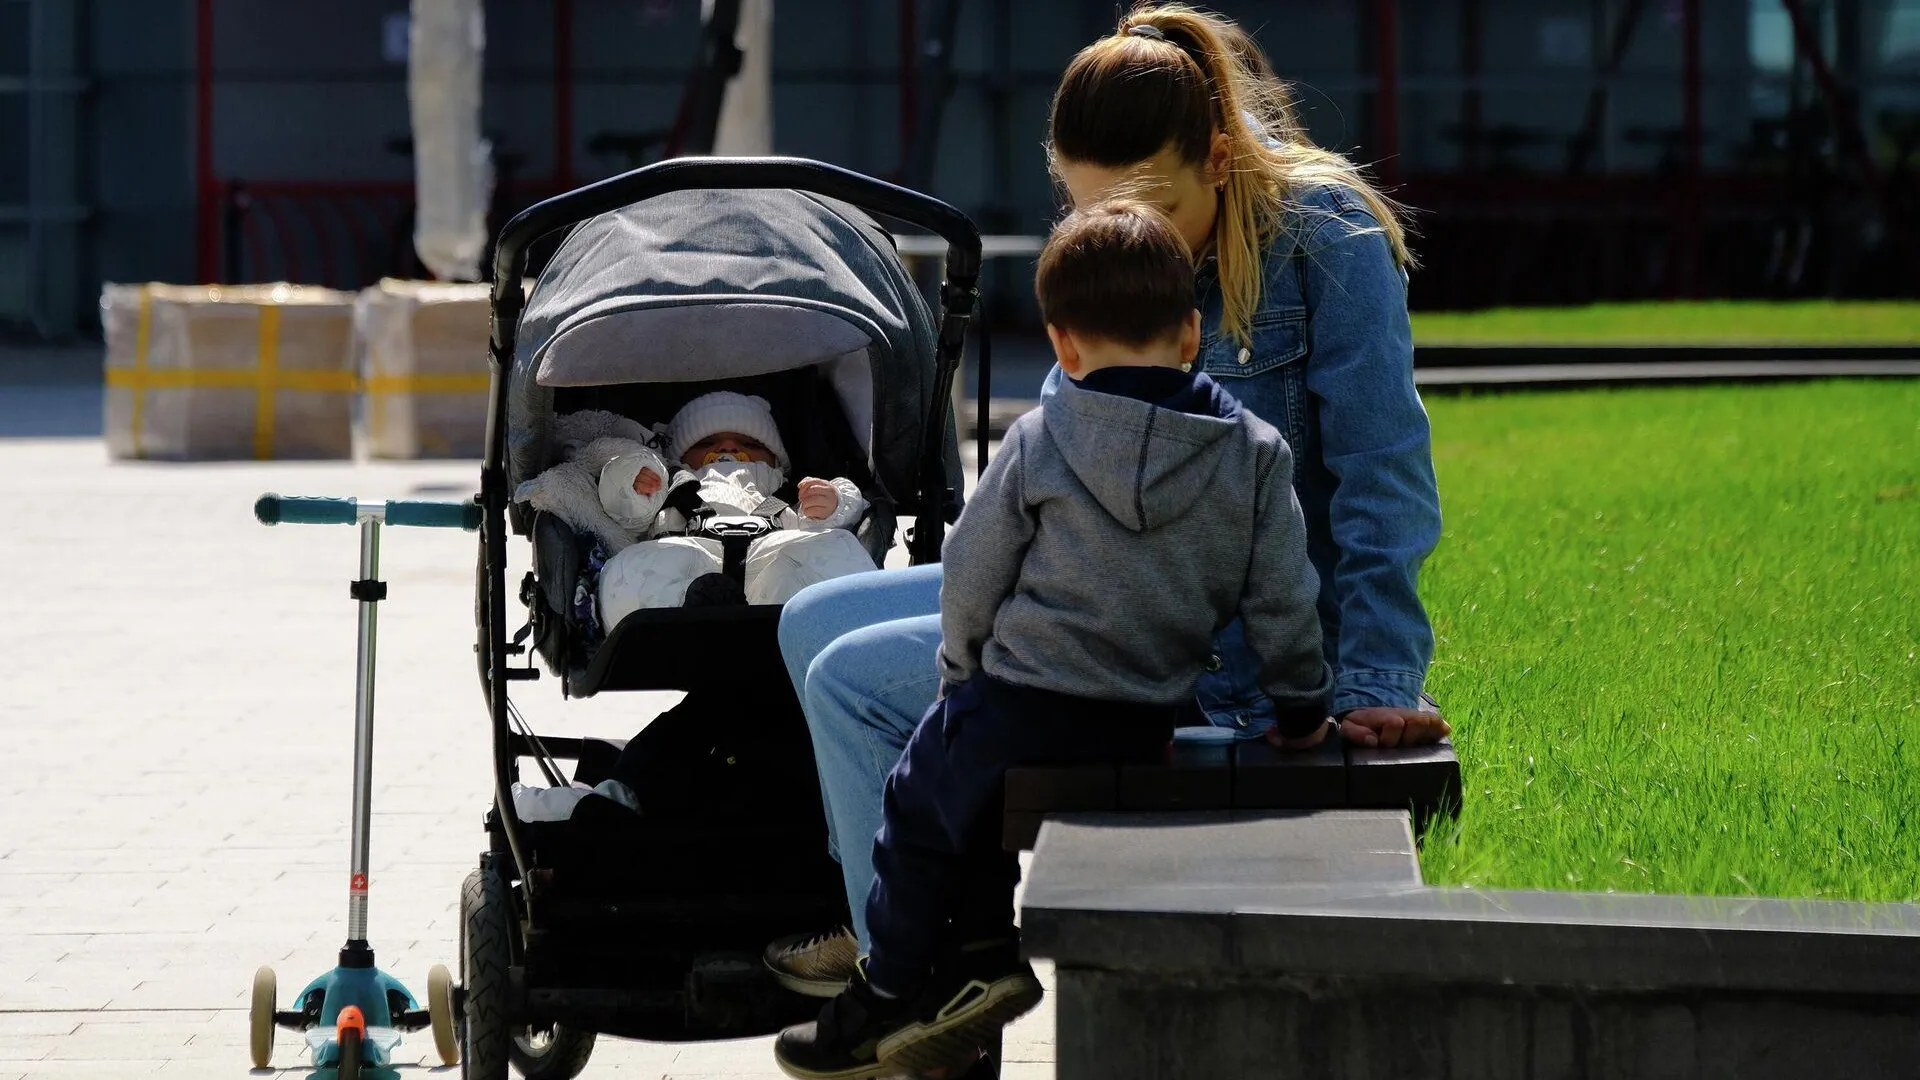 Родителей без сознания нашли около коляски с плачущим младенцем в Истре